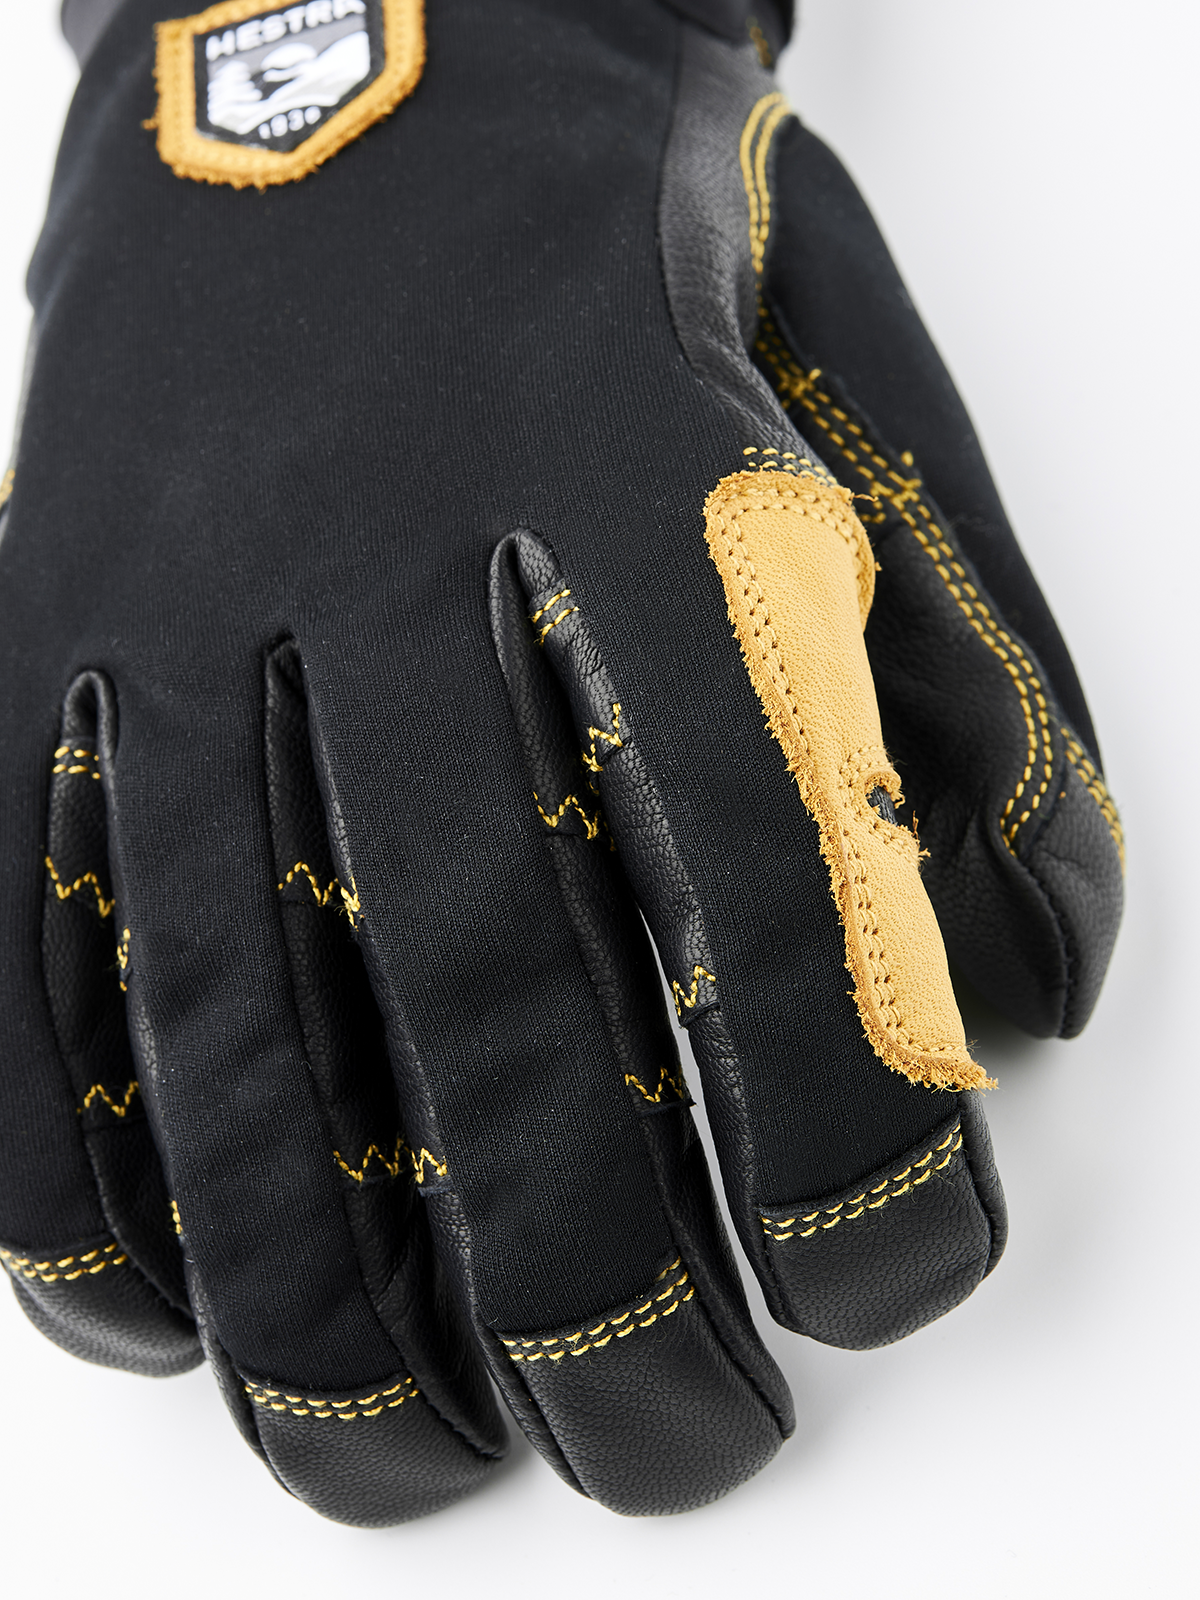 Ergo Grip Active - Black | Hestra Gloves